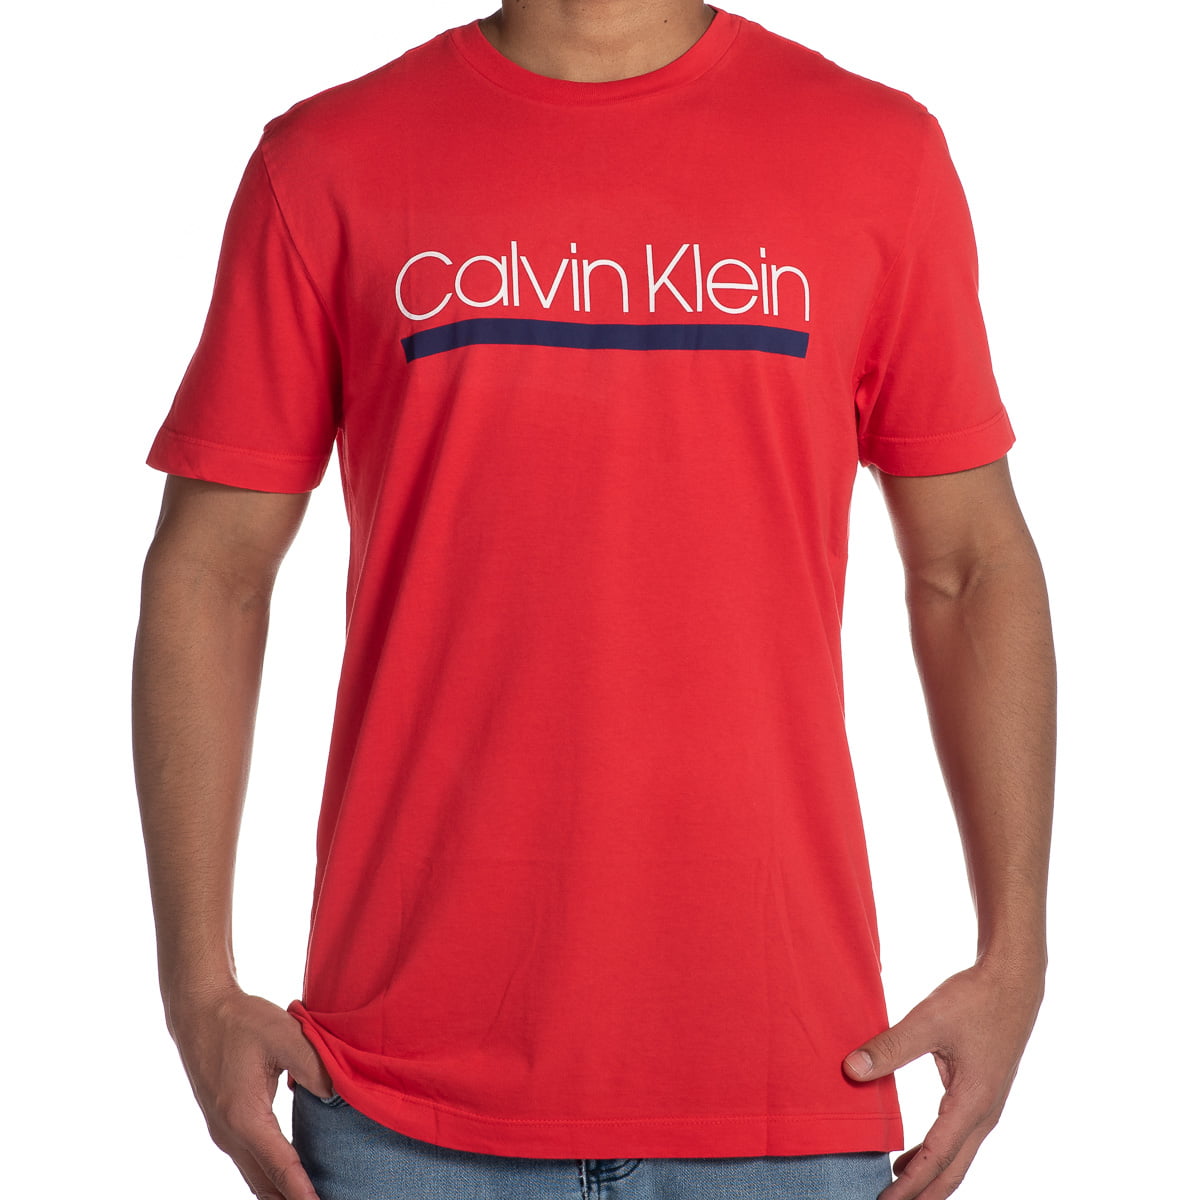 Camiseta Calvin Klein vermelha